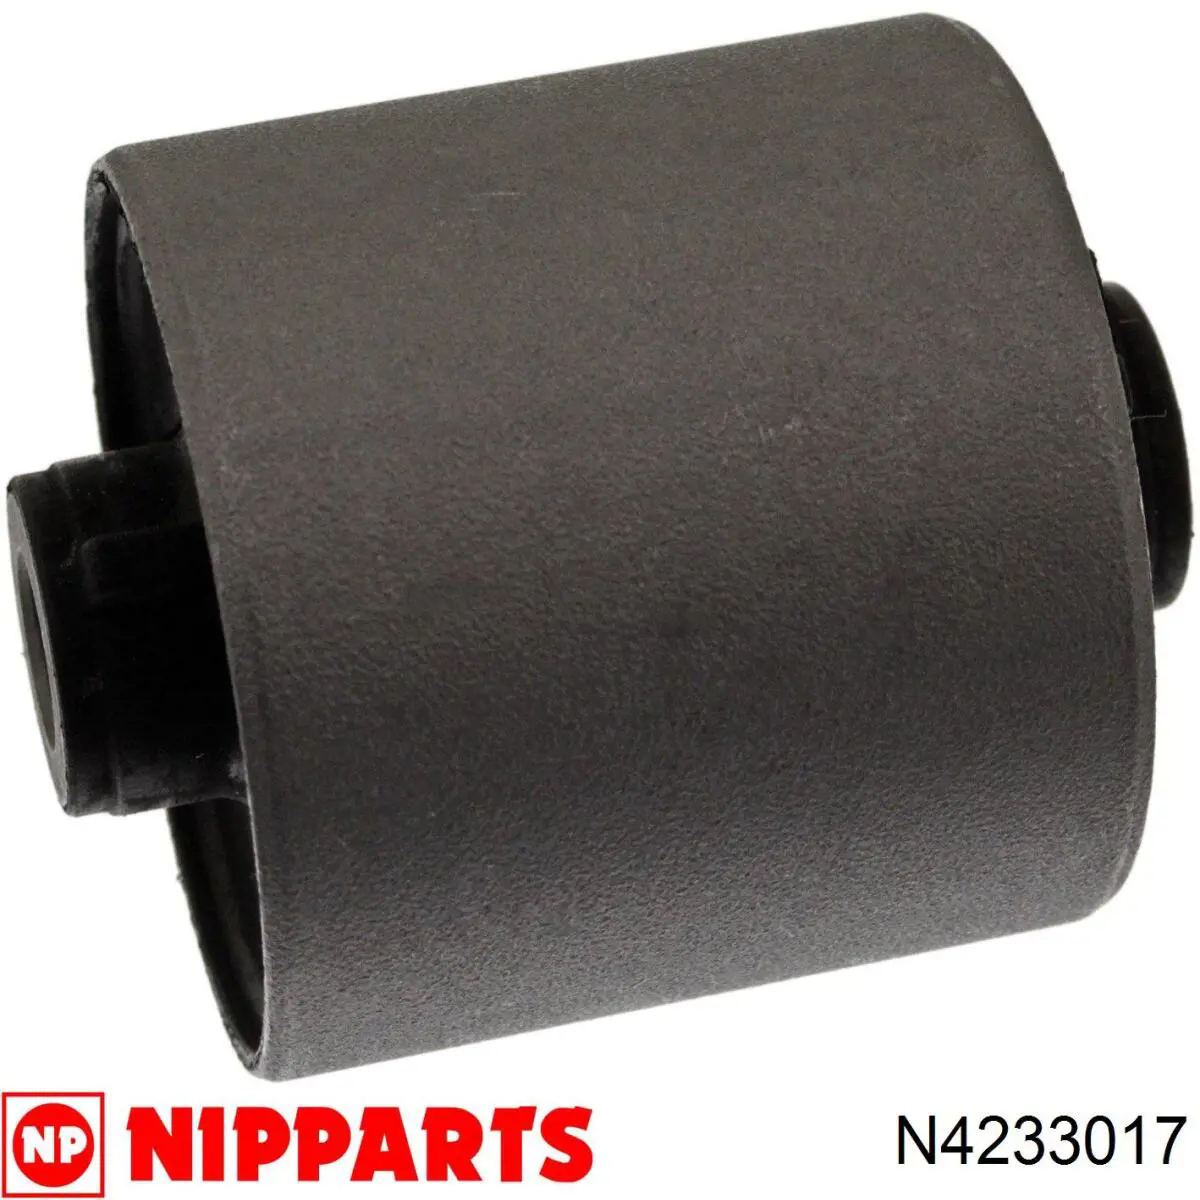 N4233017 Nipparts silentblock de suspensión delantero inferior